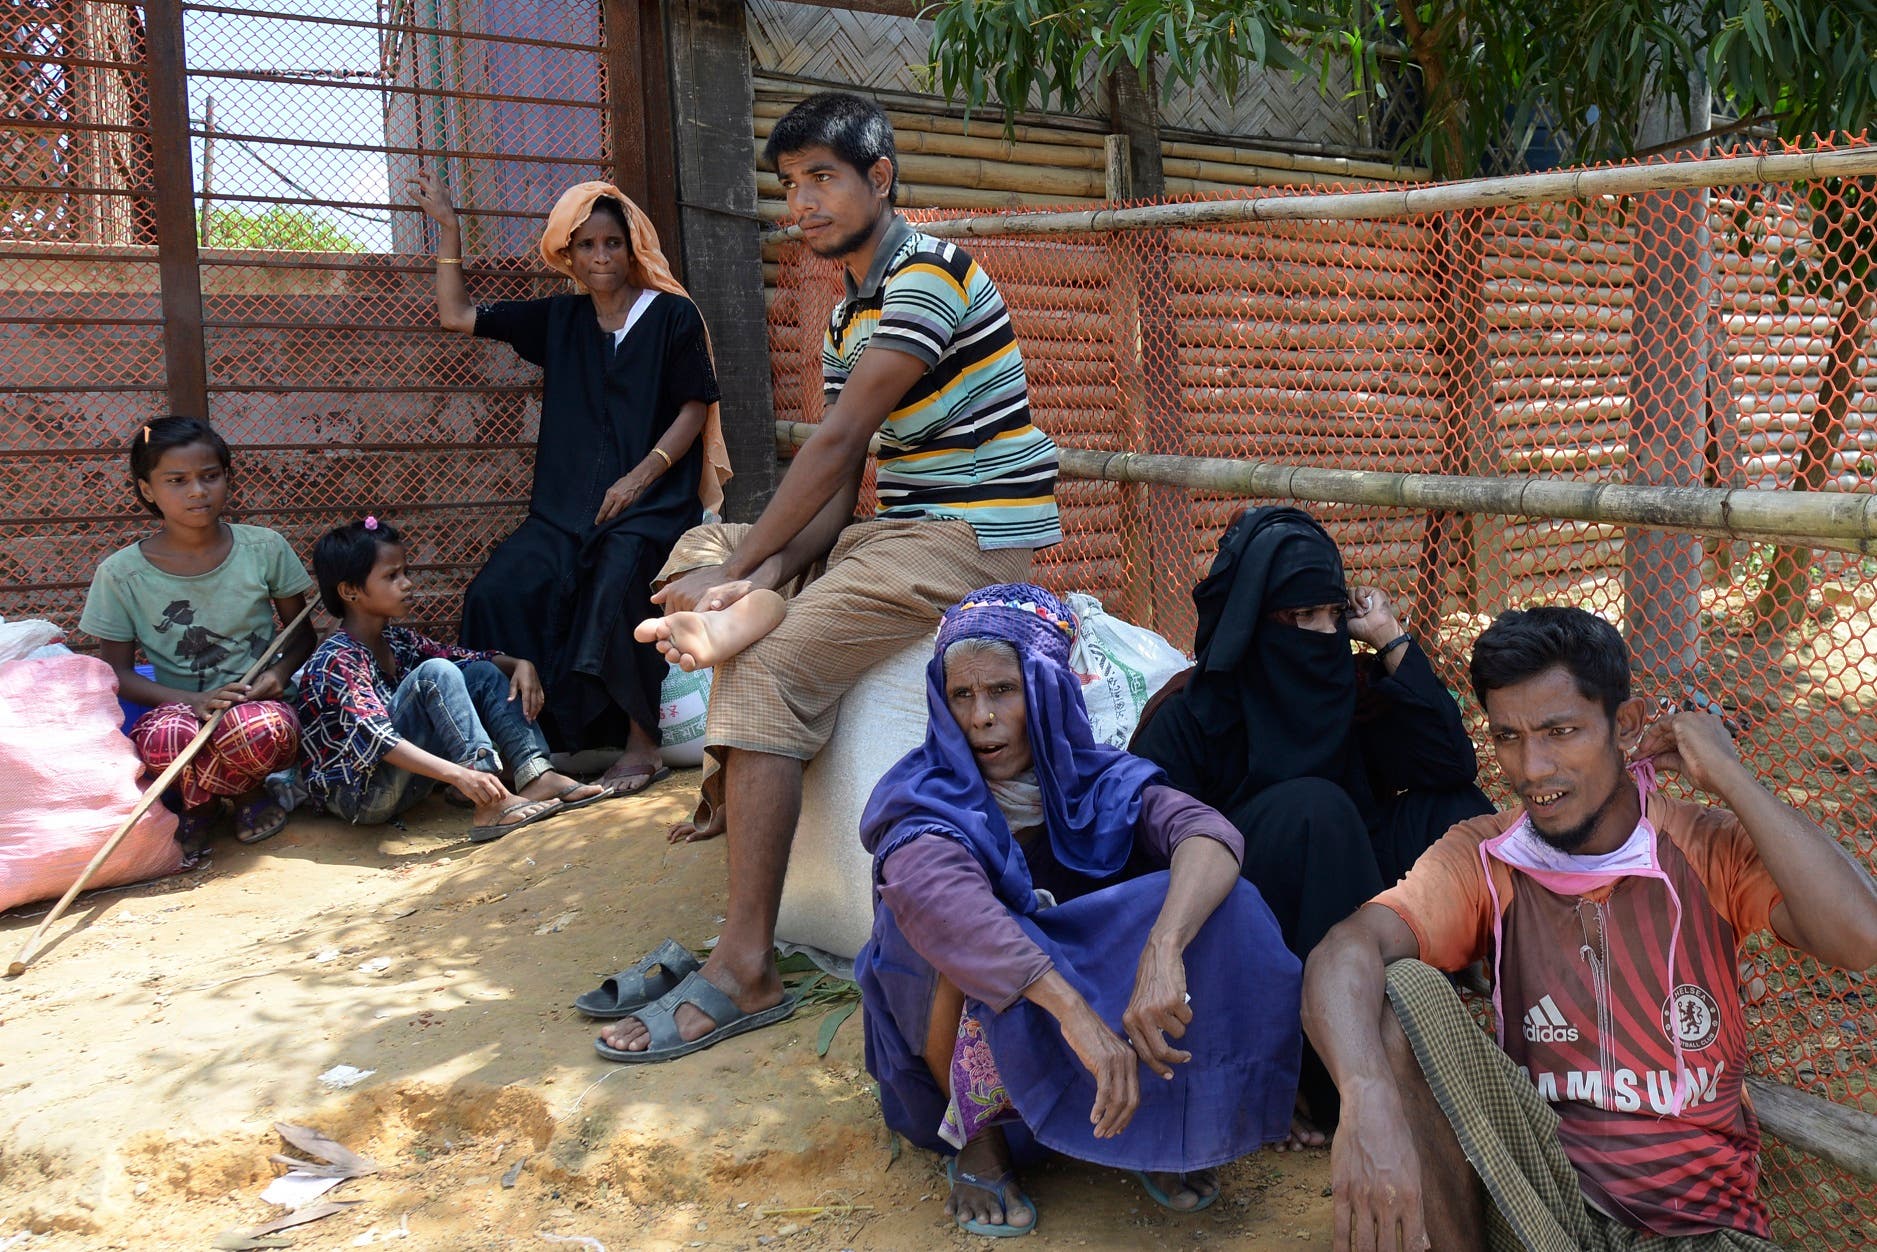 پناهندگان روهینگیا در بنگلادش